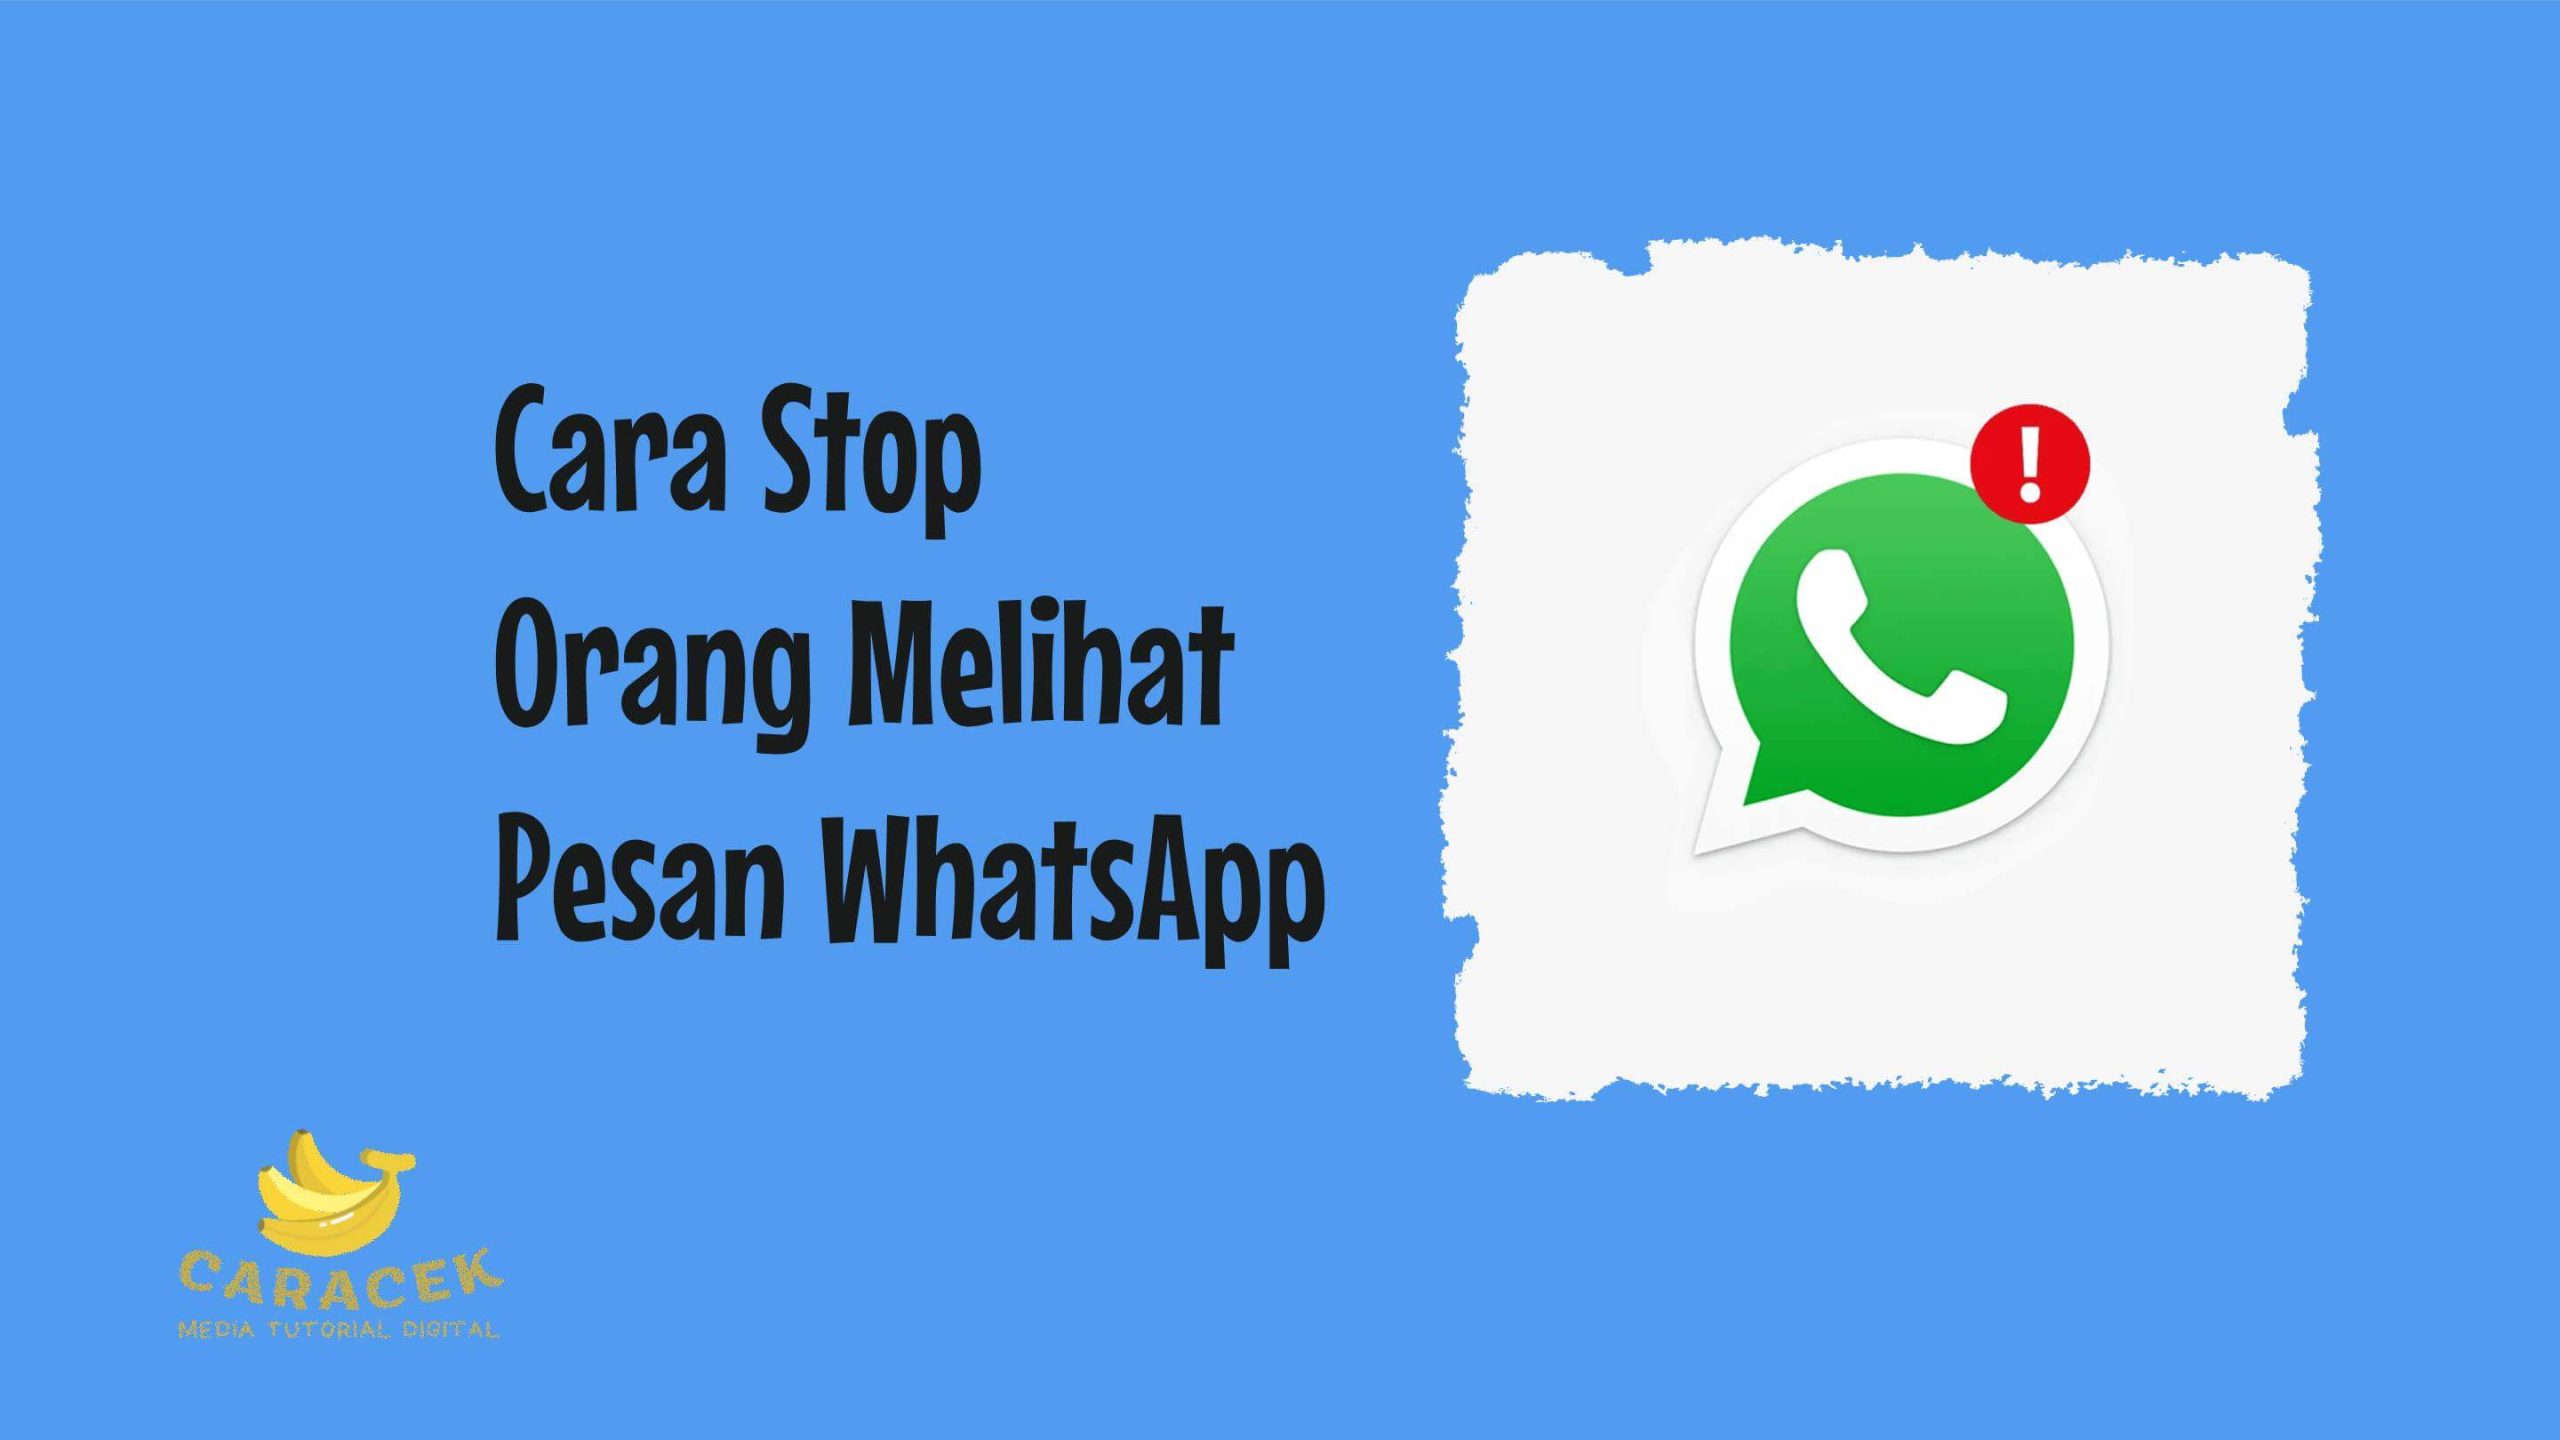 Cara Stop Orang Melihat Pesan WhatsApp